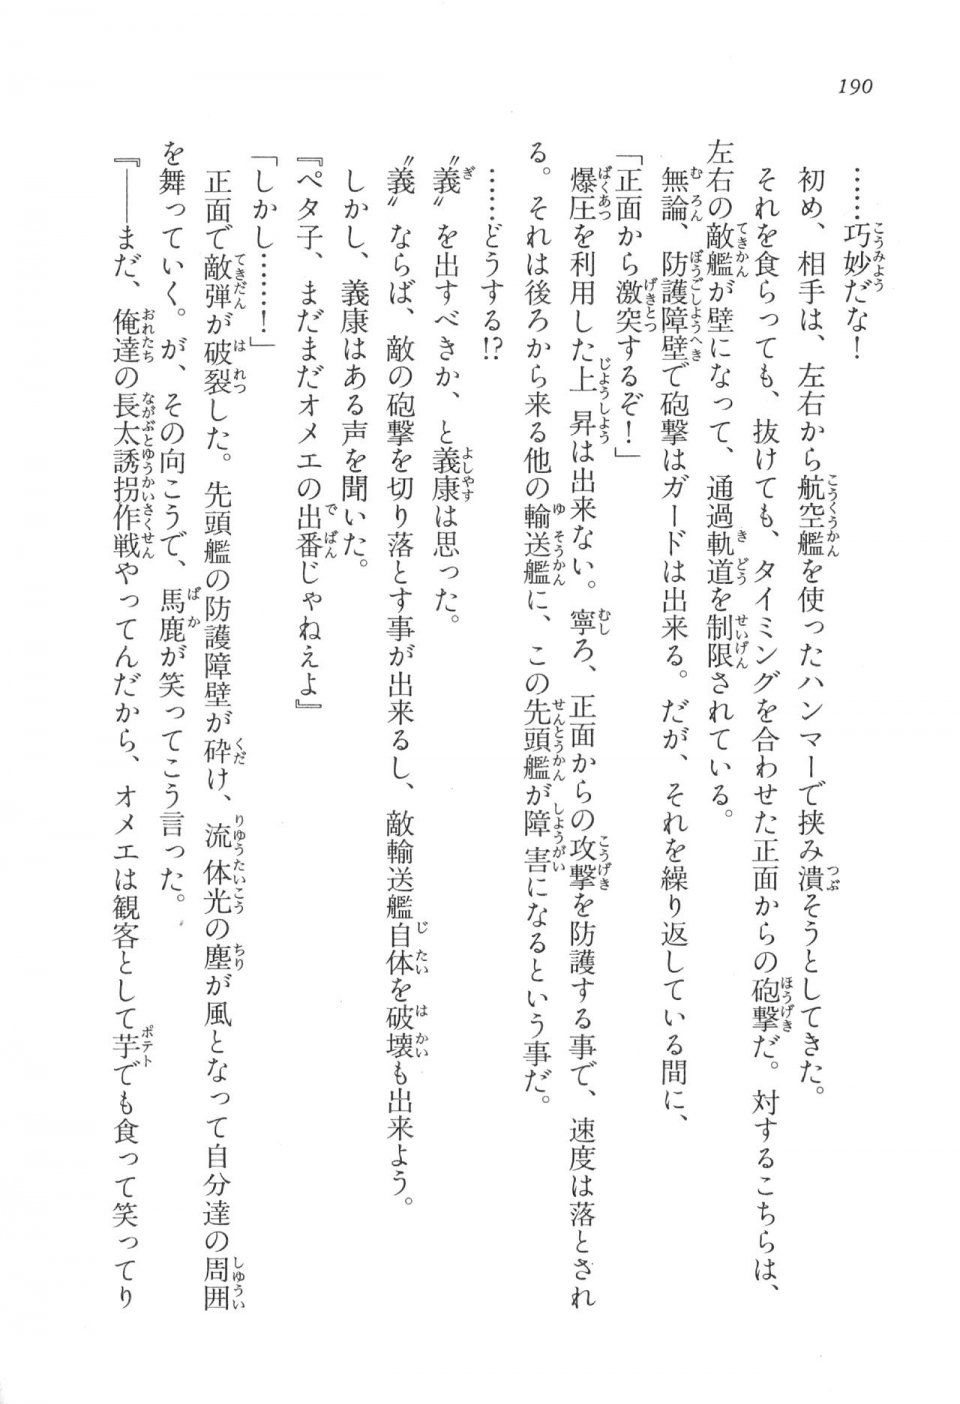 Kyoukai Senjou no Horizon LN Vol 17(7B) - Photo #190